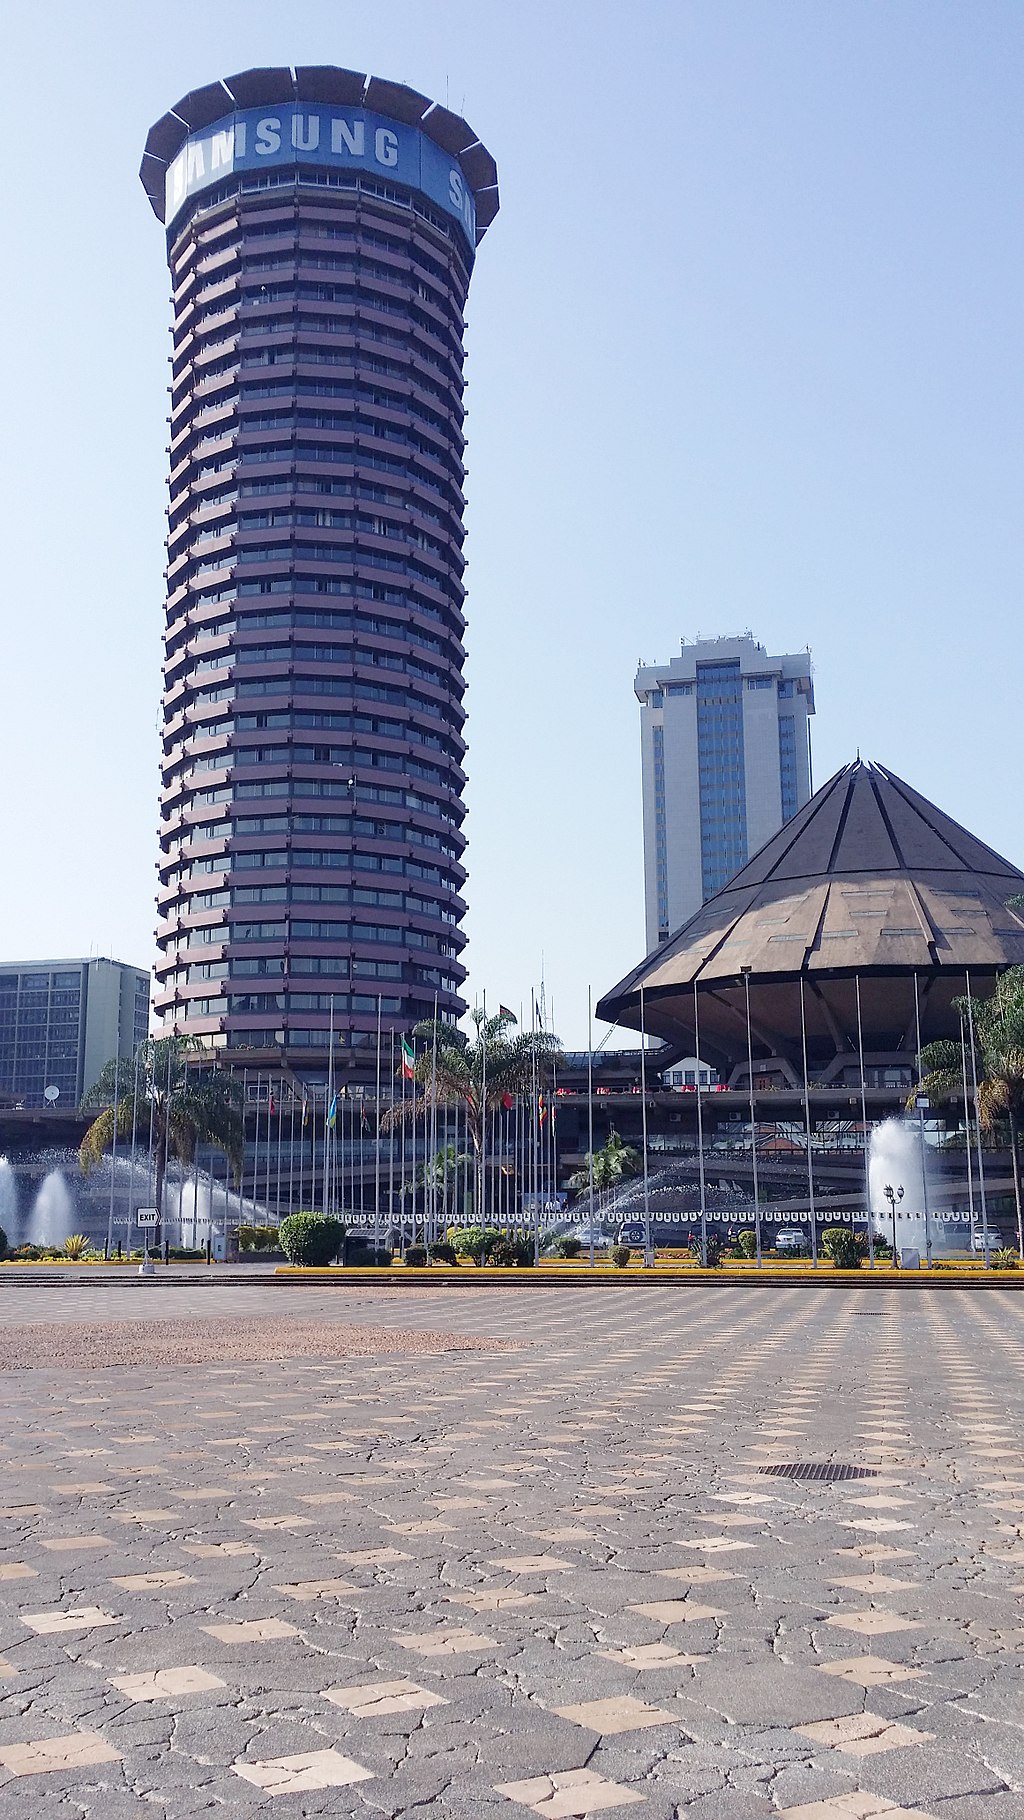 Nairobi